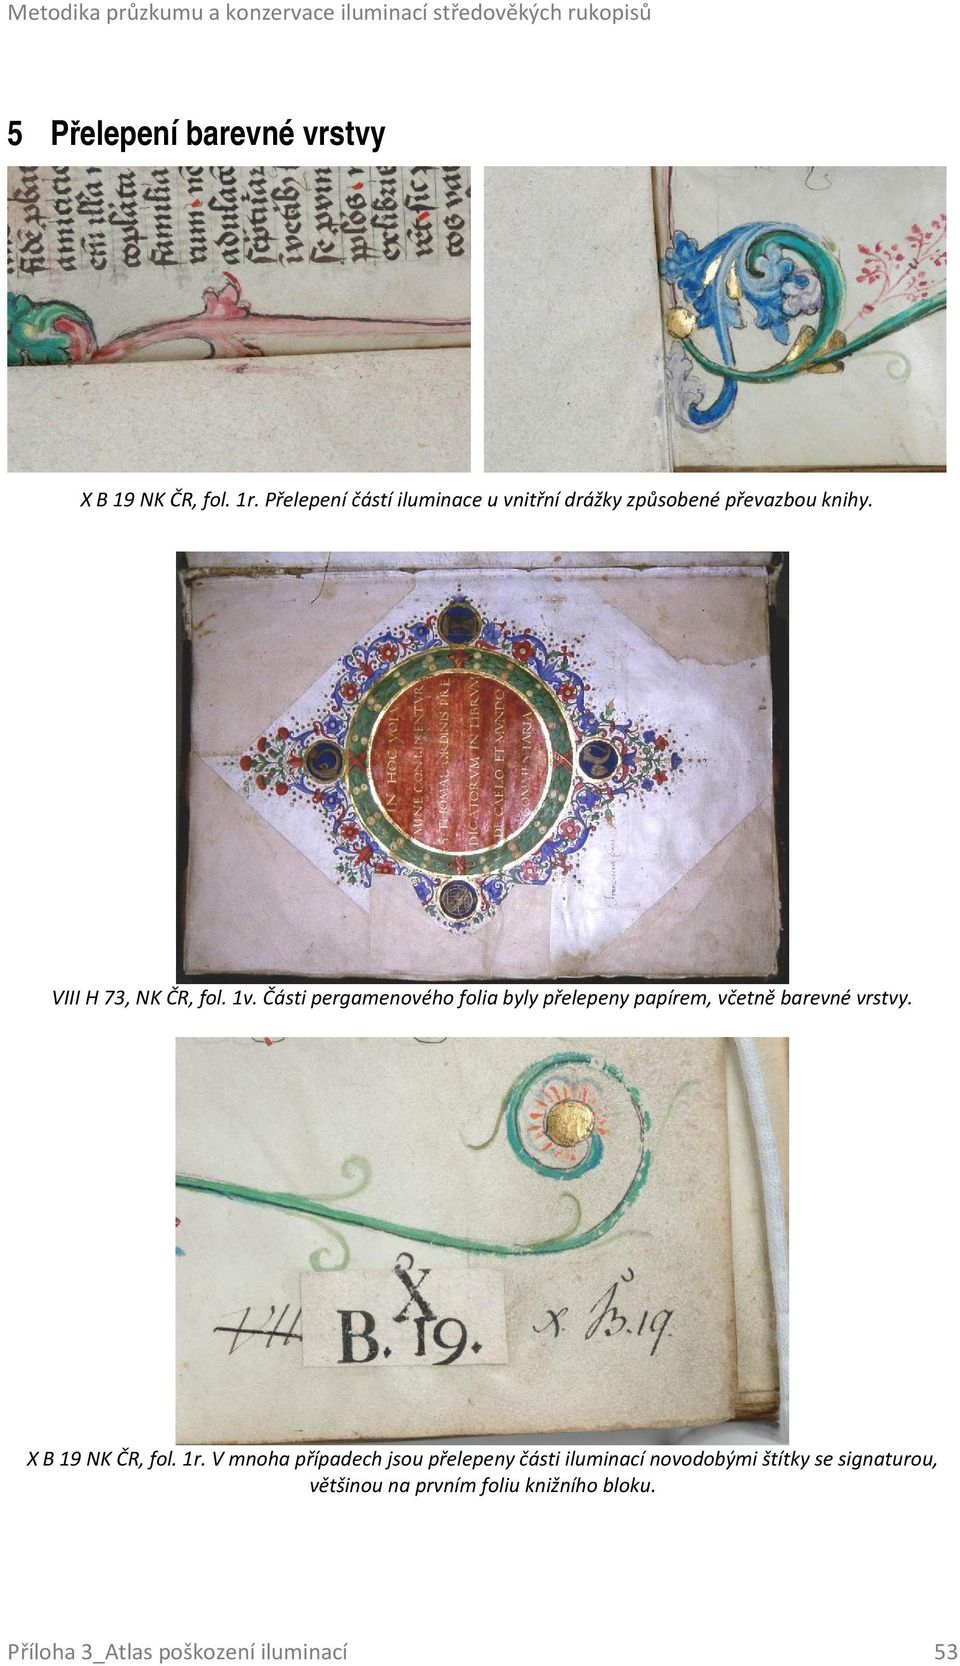 Části pergamenového folia byly přelepeny papírem, včetně barevné vrstvy. X B 19 NK ČR, fol. 1r.